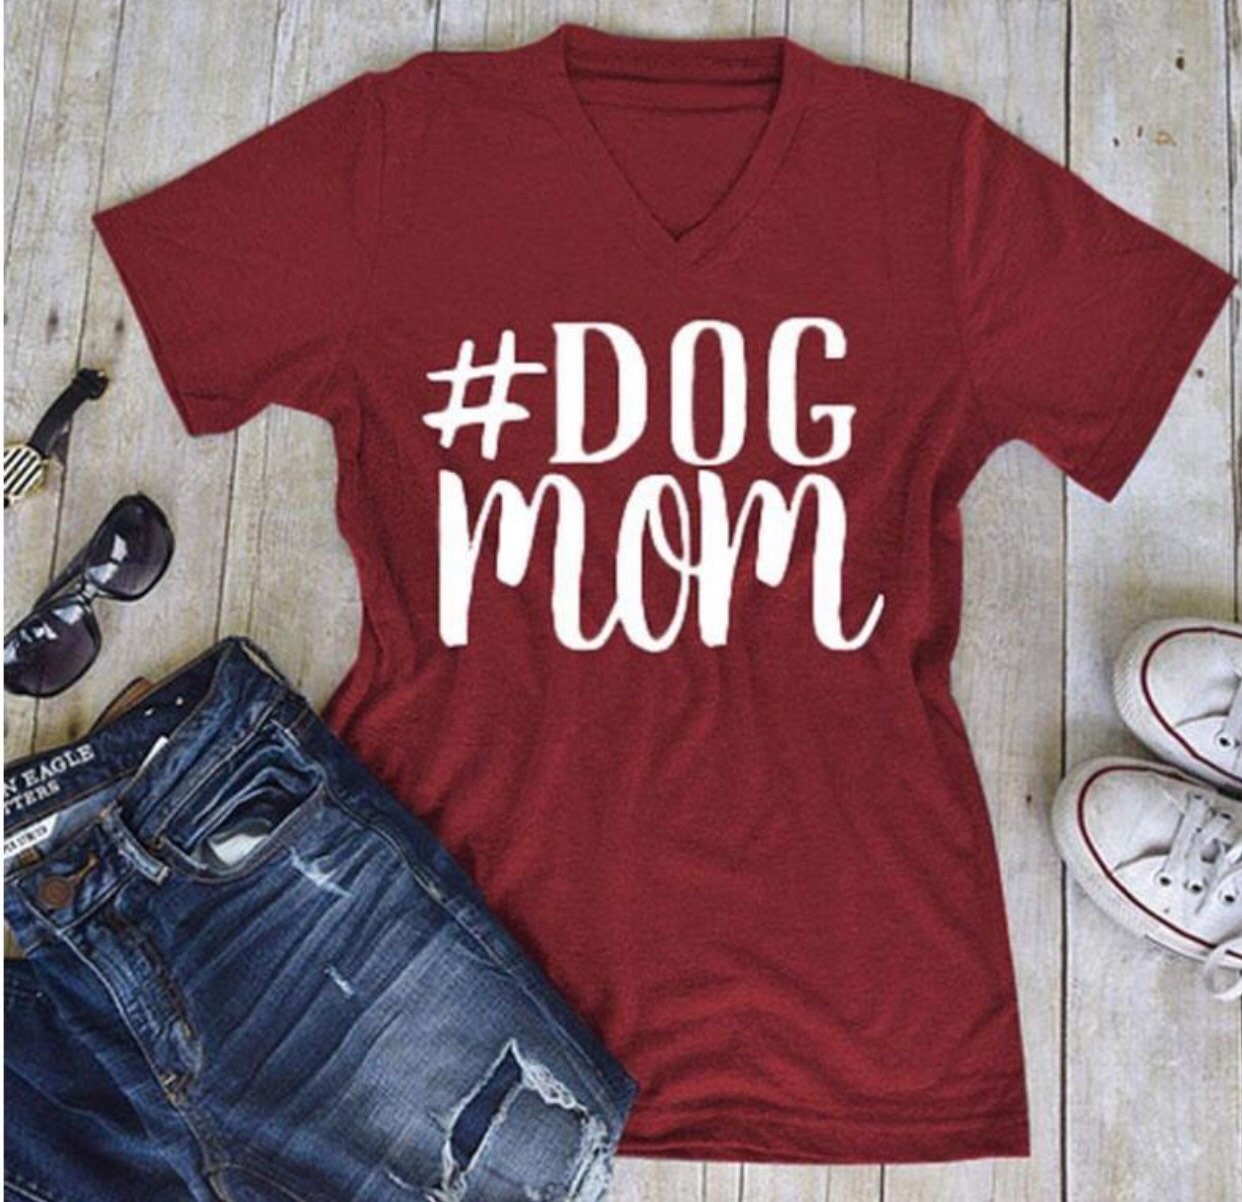 Dog mom t shirt